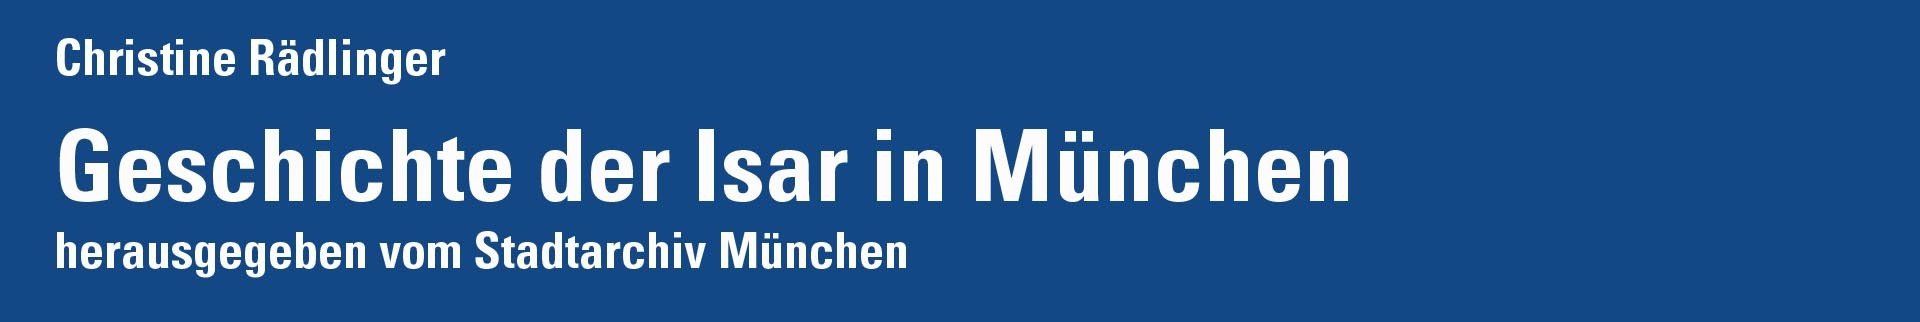 Geschichte der Isar in München